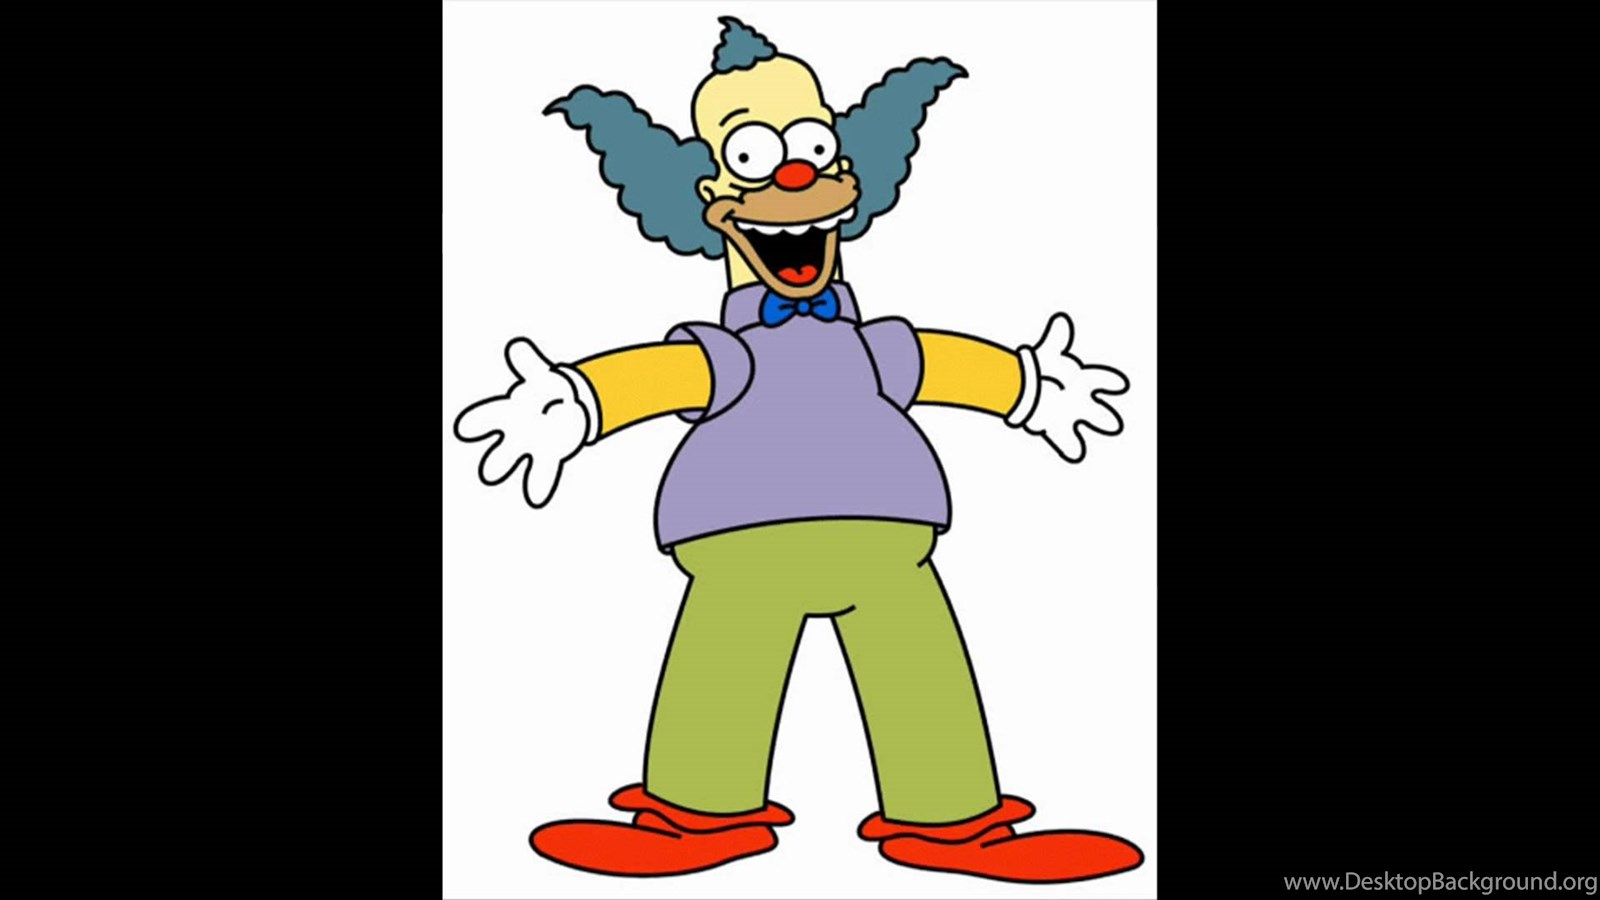 Download Krusty's Laugh YouTube Widescreen Widescreen 16:9 1600x900 De...